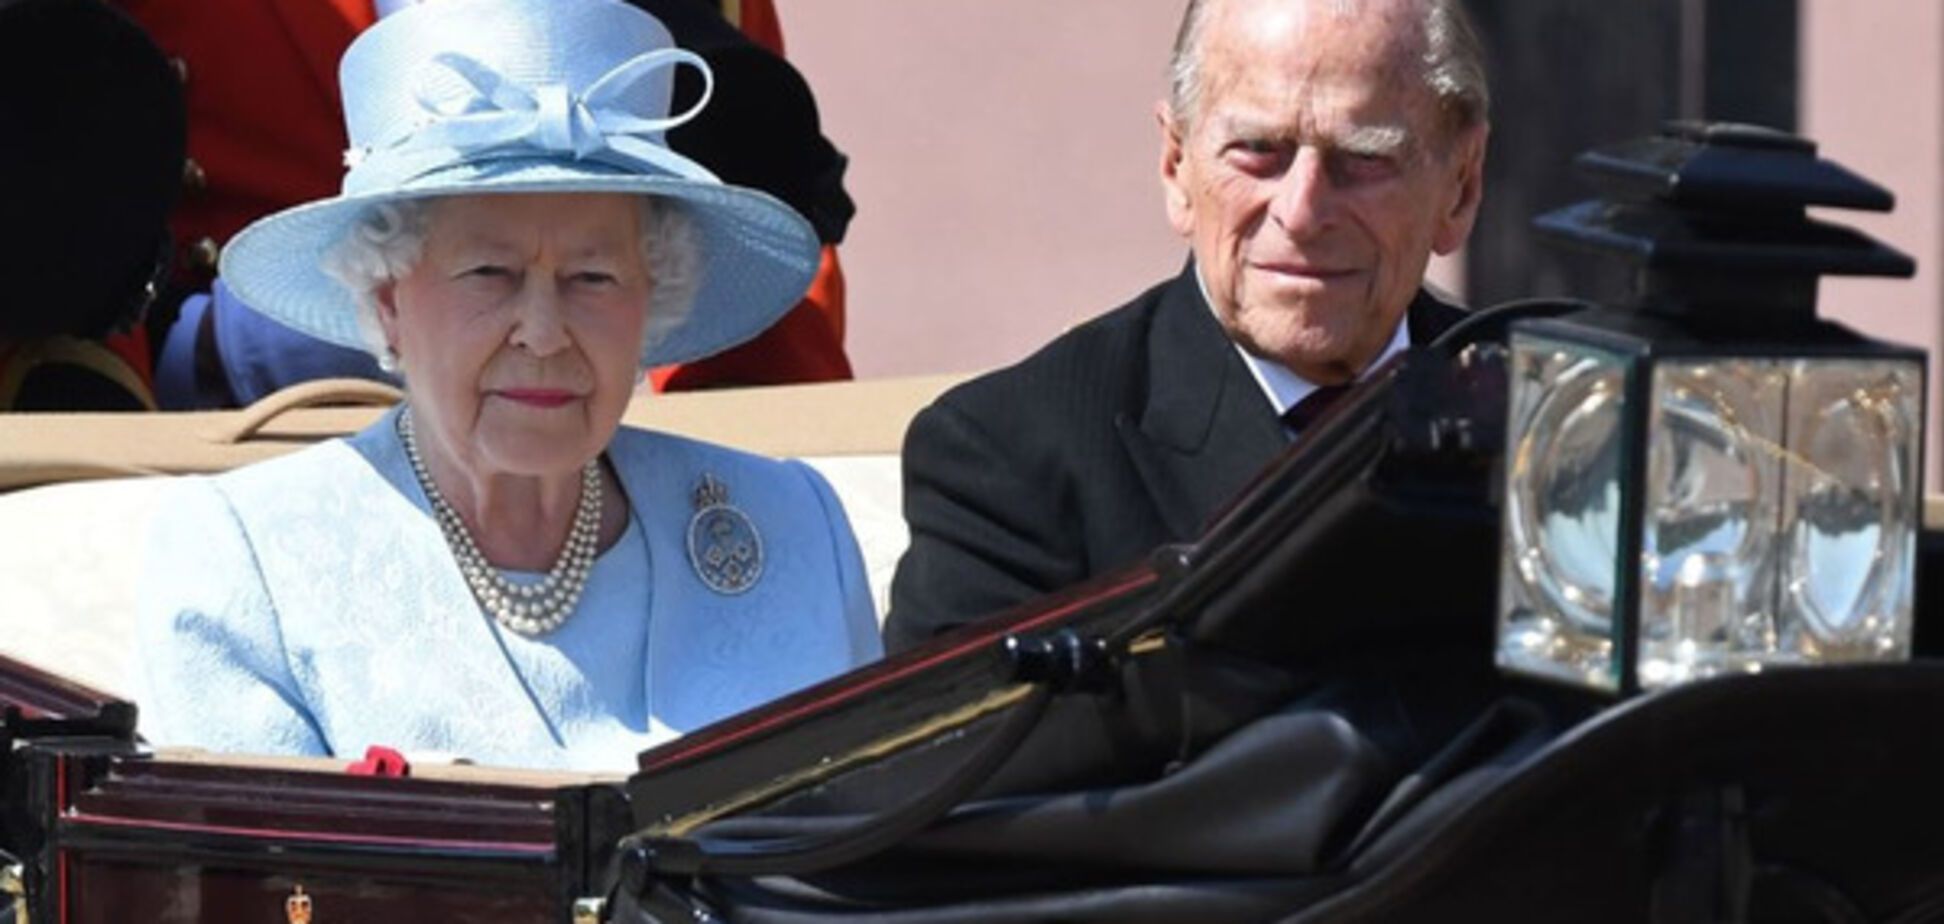 Мрачное настроение: в свой день рождения королева Елизавета вспомнила жертв теракта и пожара